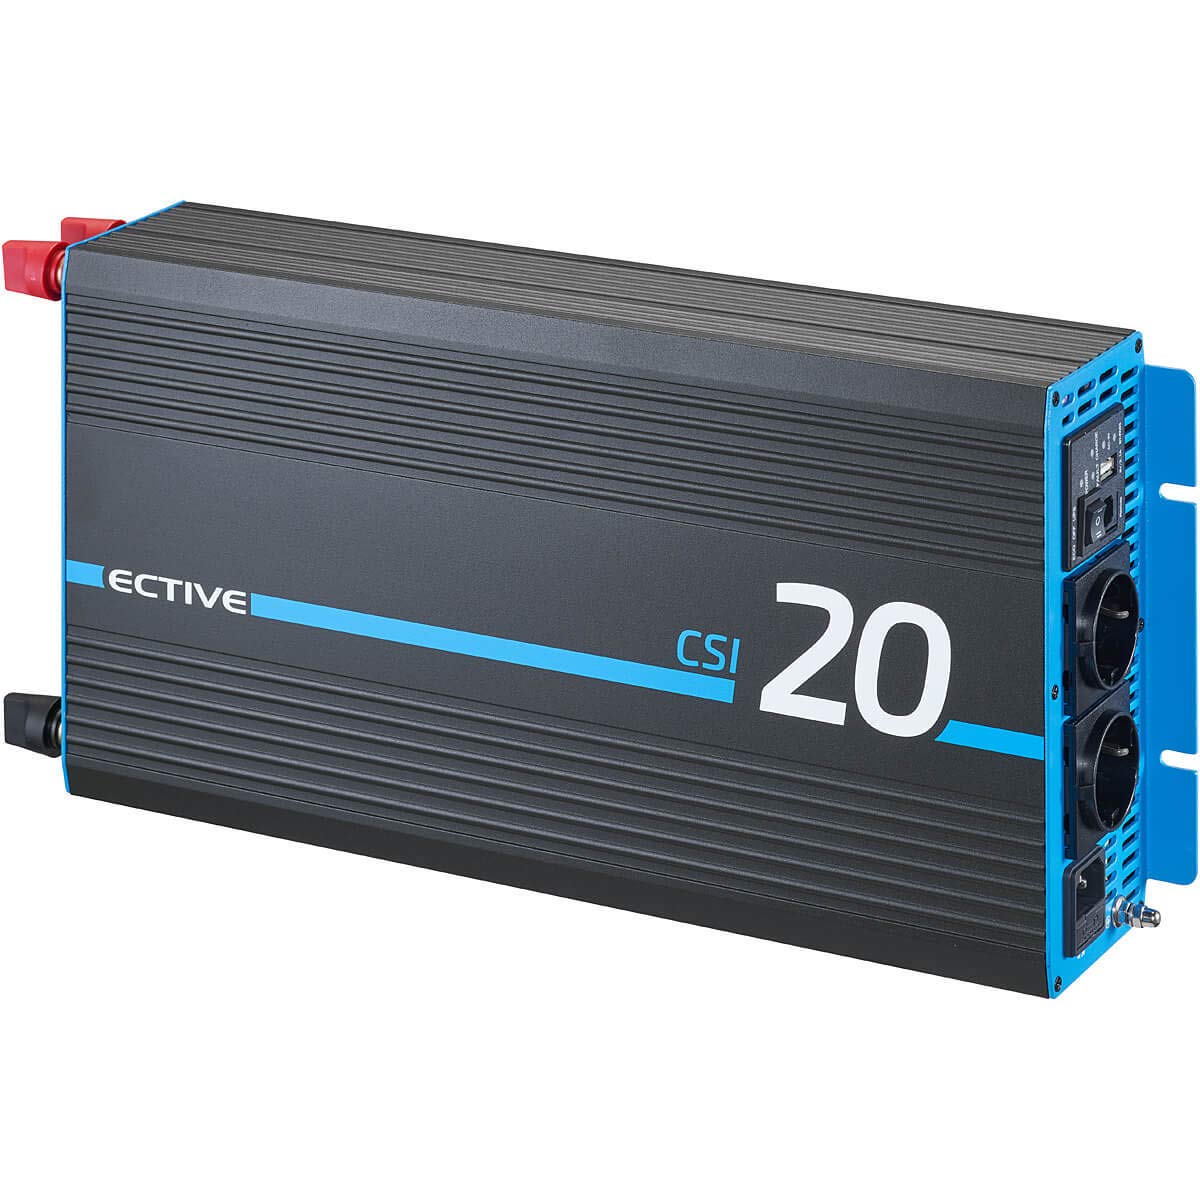 ECTIVE Reiner Sinsus Wechselrichter CSI 20-2000W, 12V auf 230V, USB, USV Funktion, Überhitzungsschutz, Netzvorrangschaltung - DC/AC Spannungswandler, Umwandler, Stromwandler für Haushaltsgeräten von ECTIVE